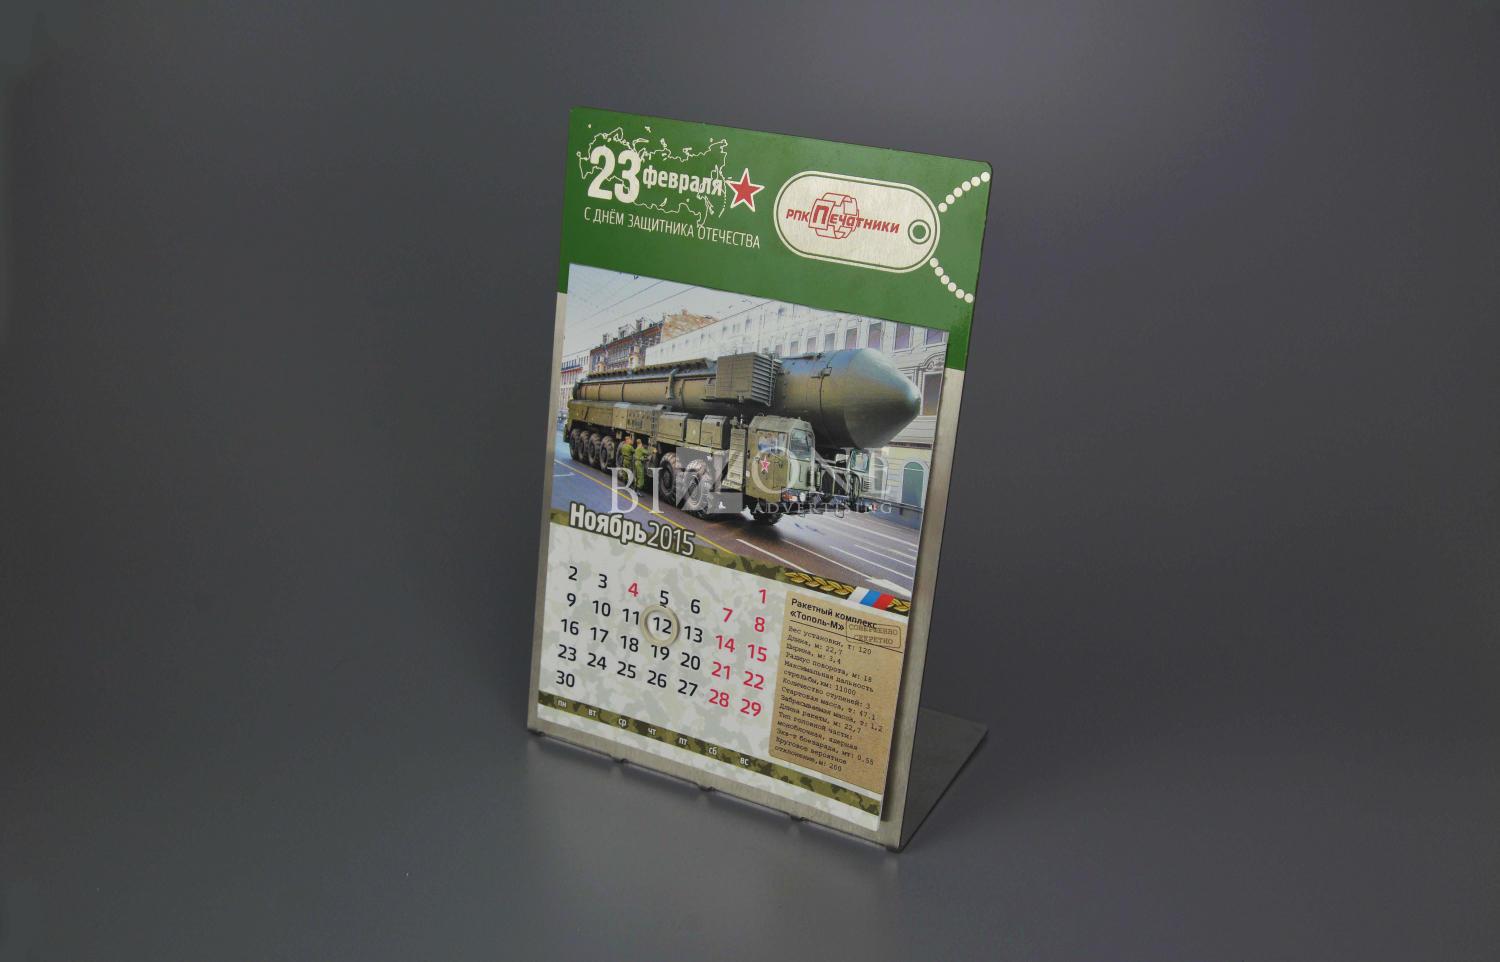 Металлический календарь с военной тематикой. Фотография металлического календаря к 23 февраля.